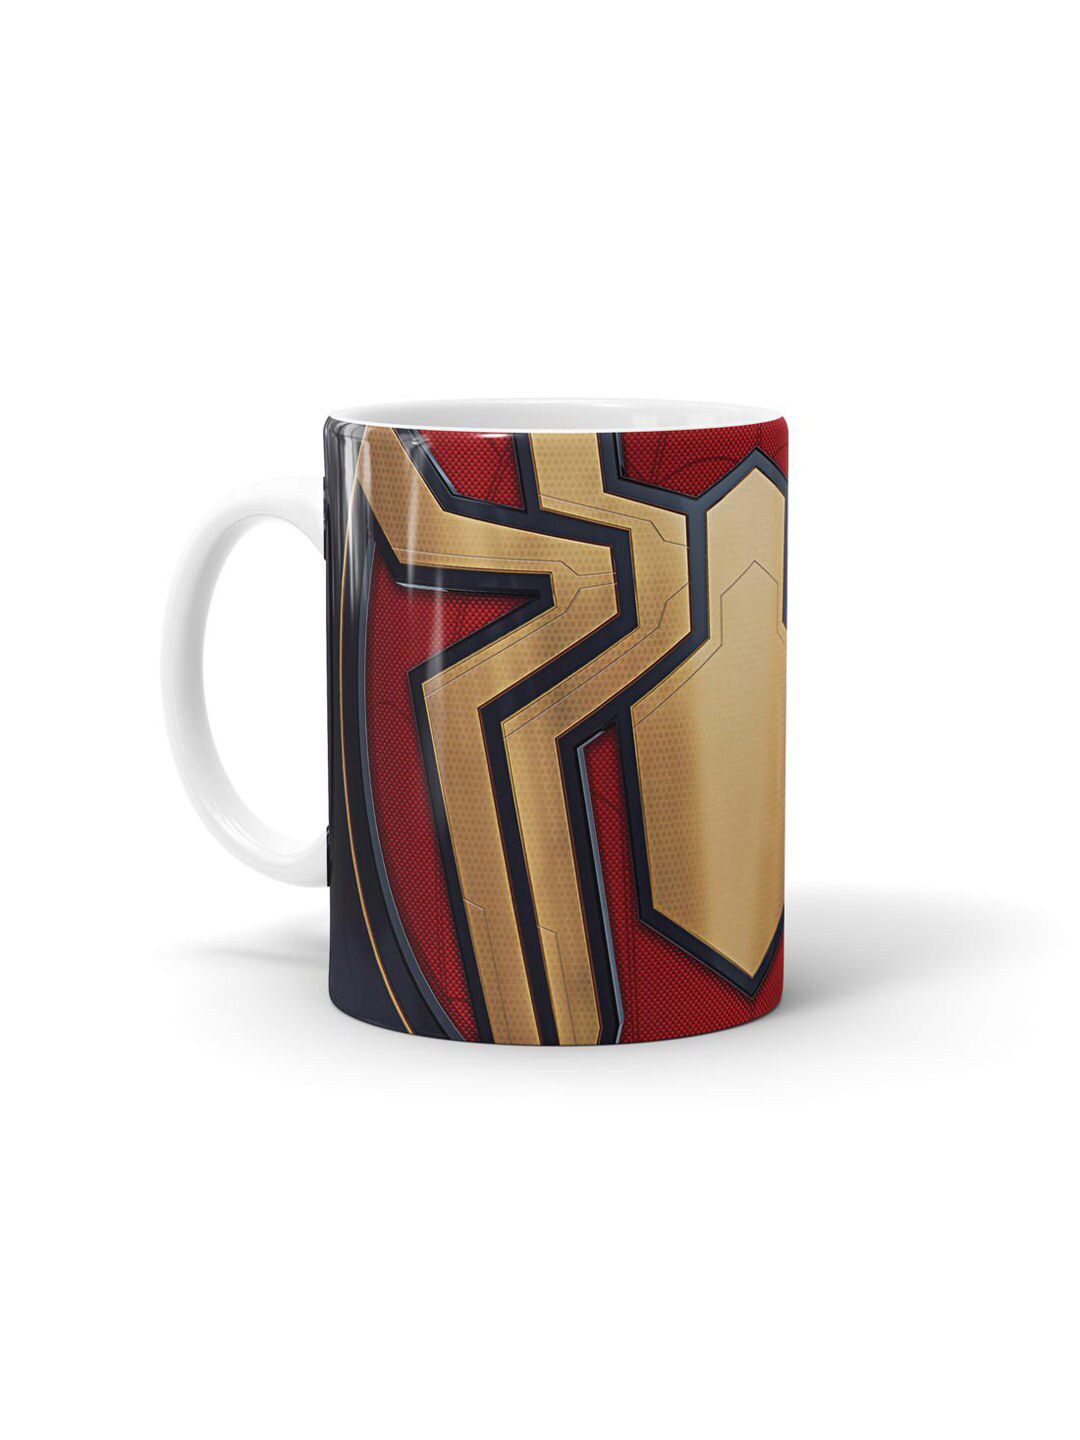 macmerise Red & Gold-Toned Printed Ceramic Glossy Mug Price in India